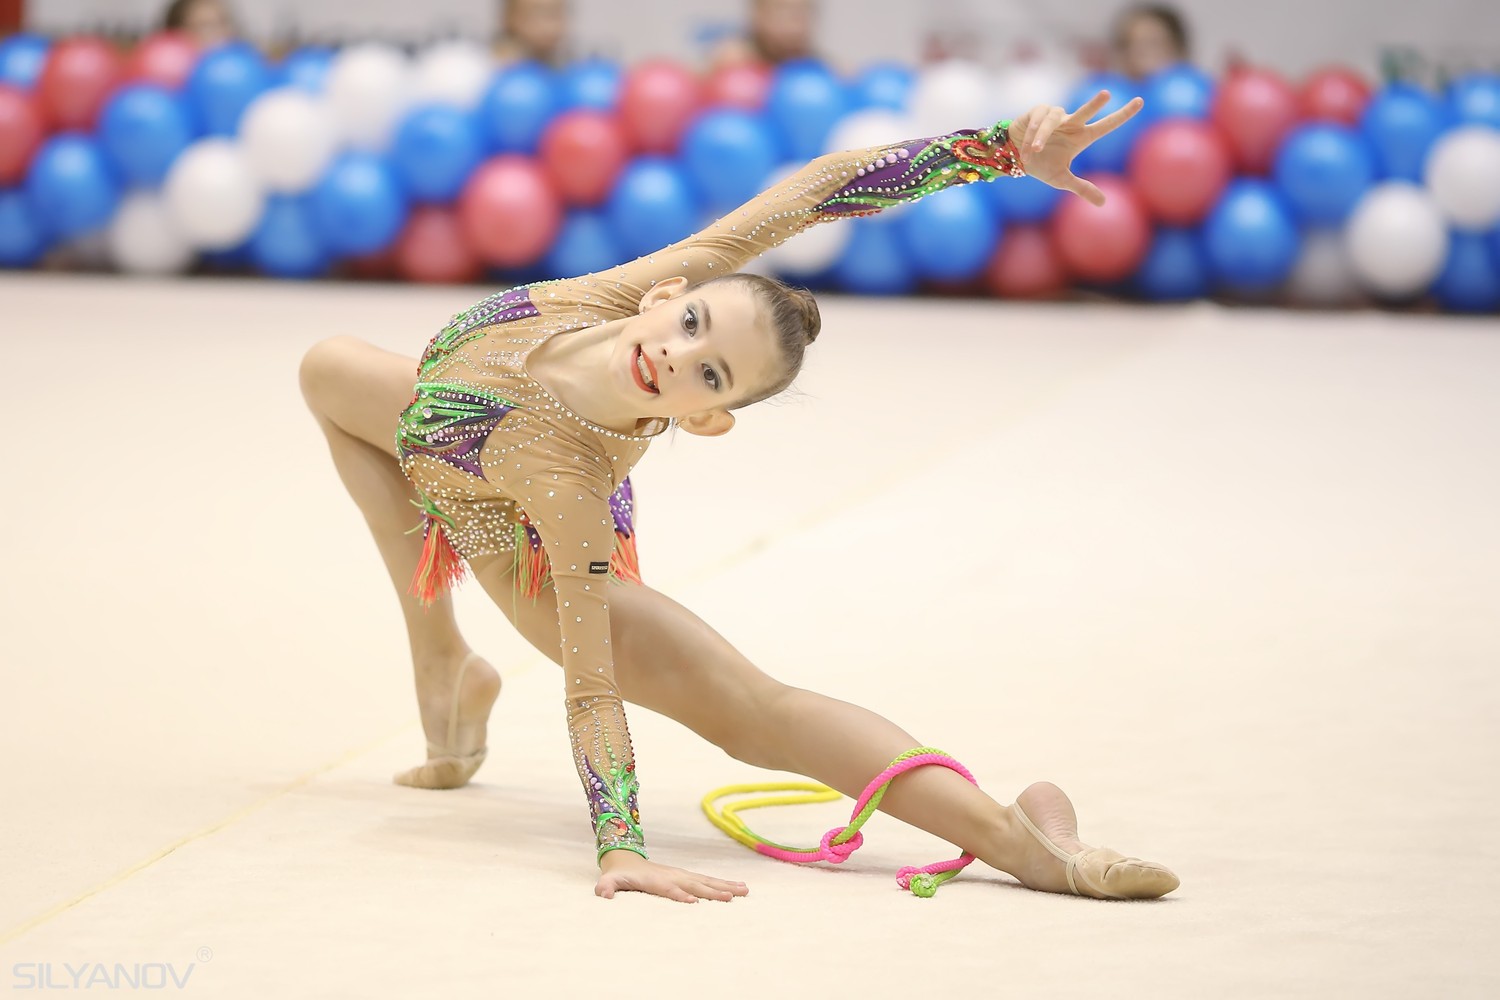 Турнир на призы двукратной олимпийской чемпионки Елены Посевиной (11-13 ноября 2016 г.Бердск)